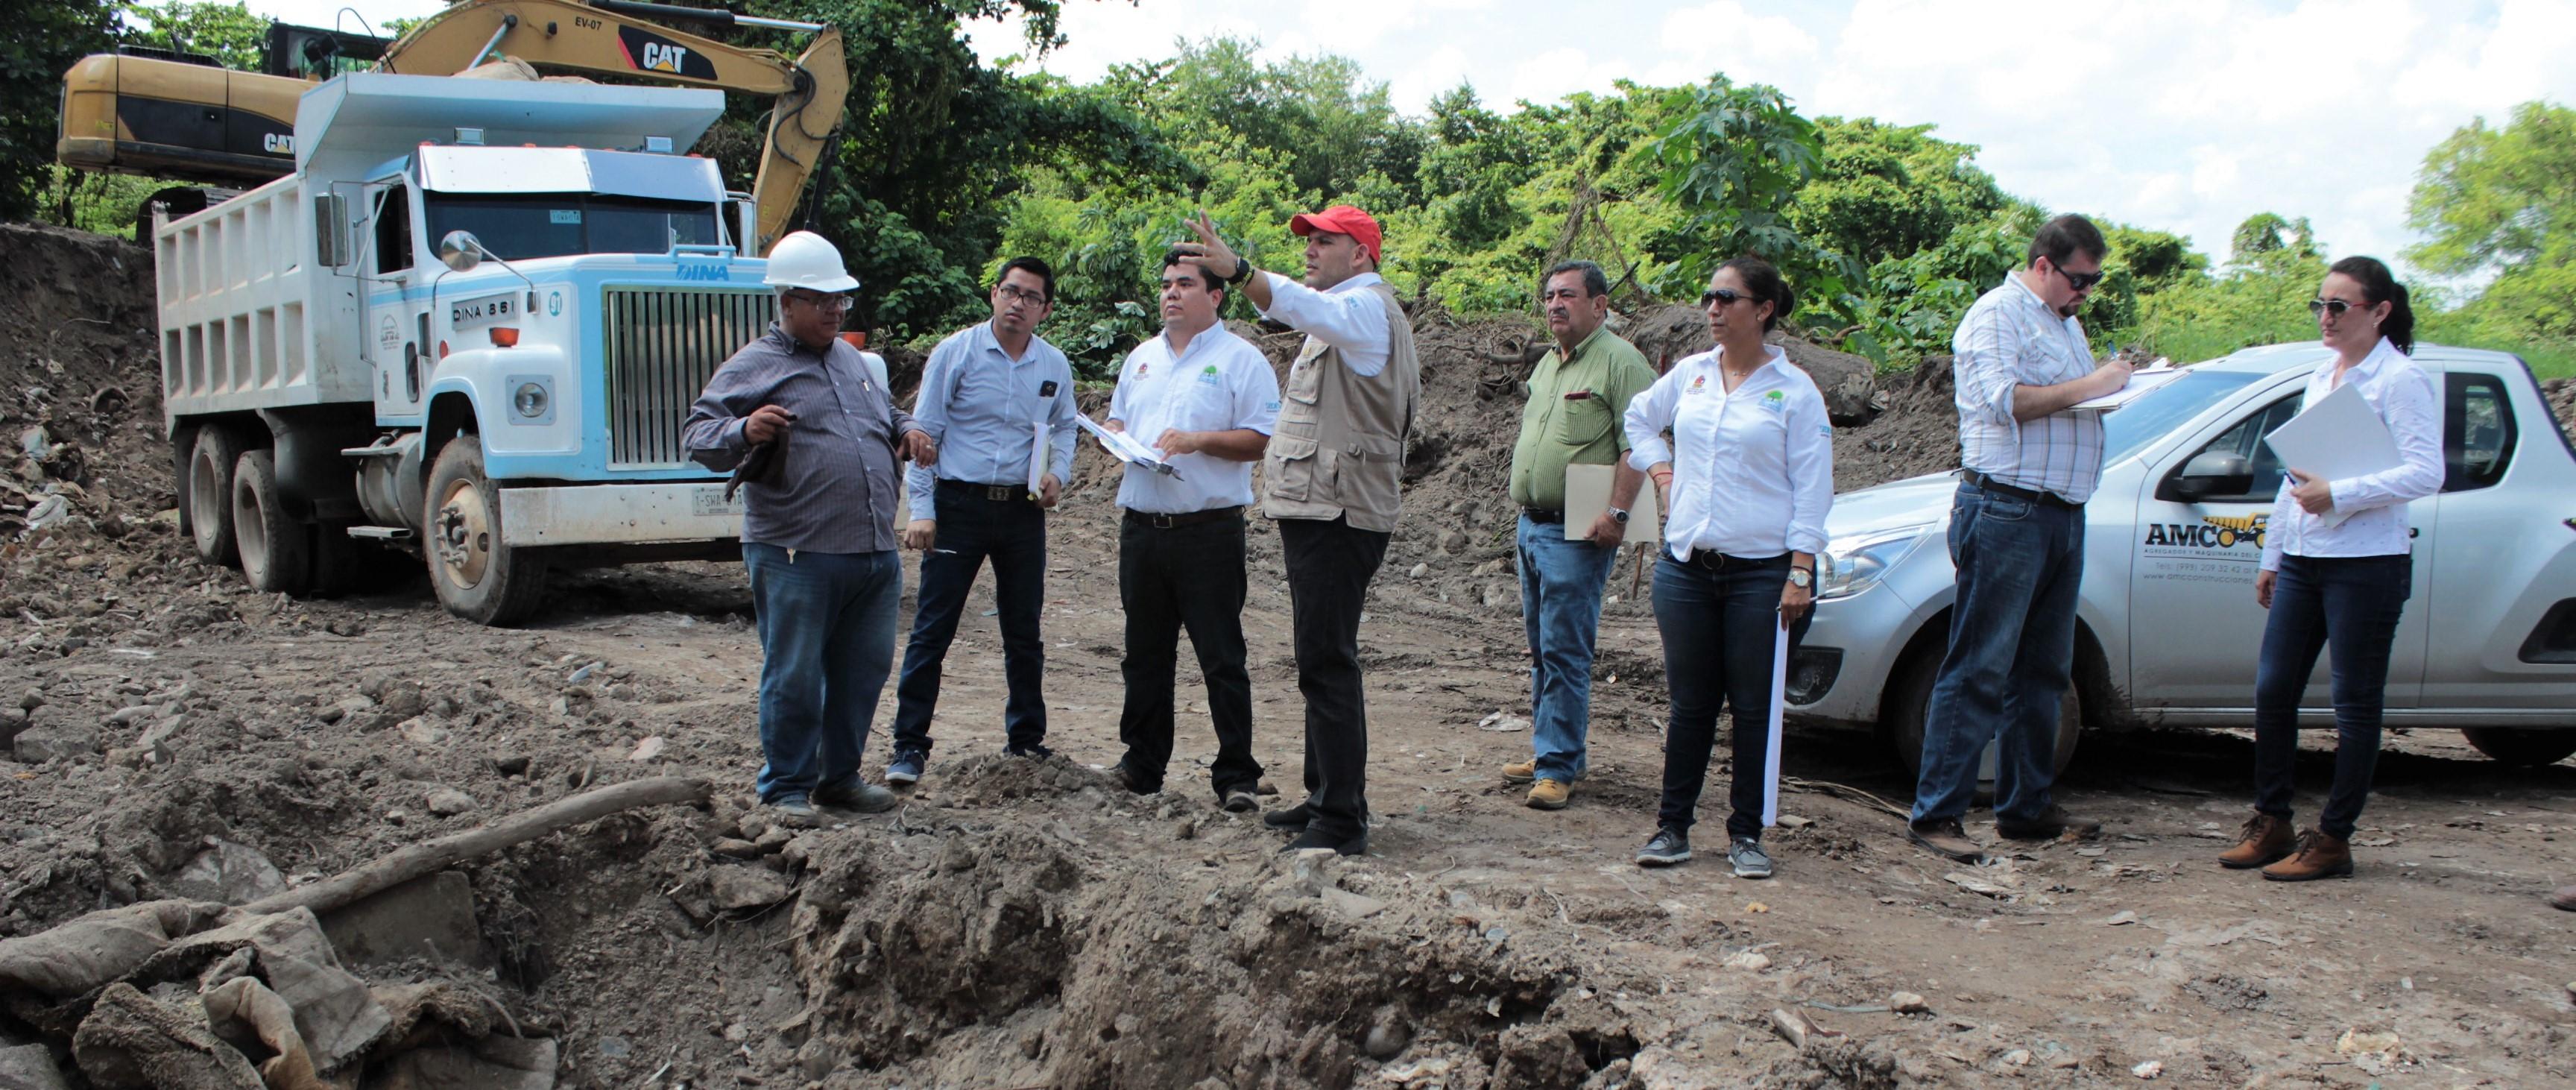 Autoridades y ciudadanos supervisan el avance de obras públicas en Isla Mujeres y Benito Juárez.